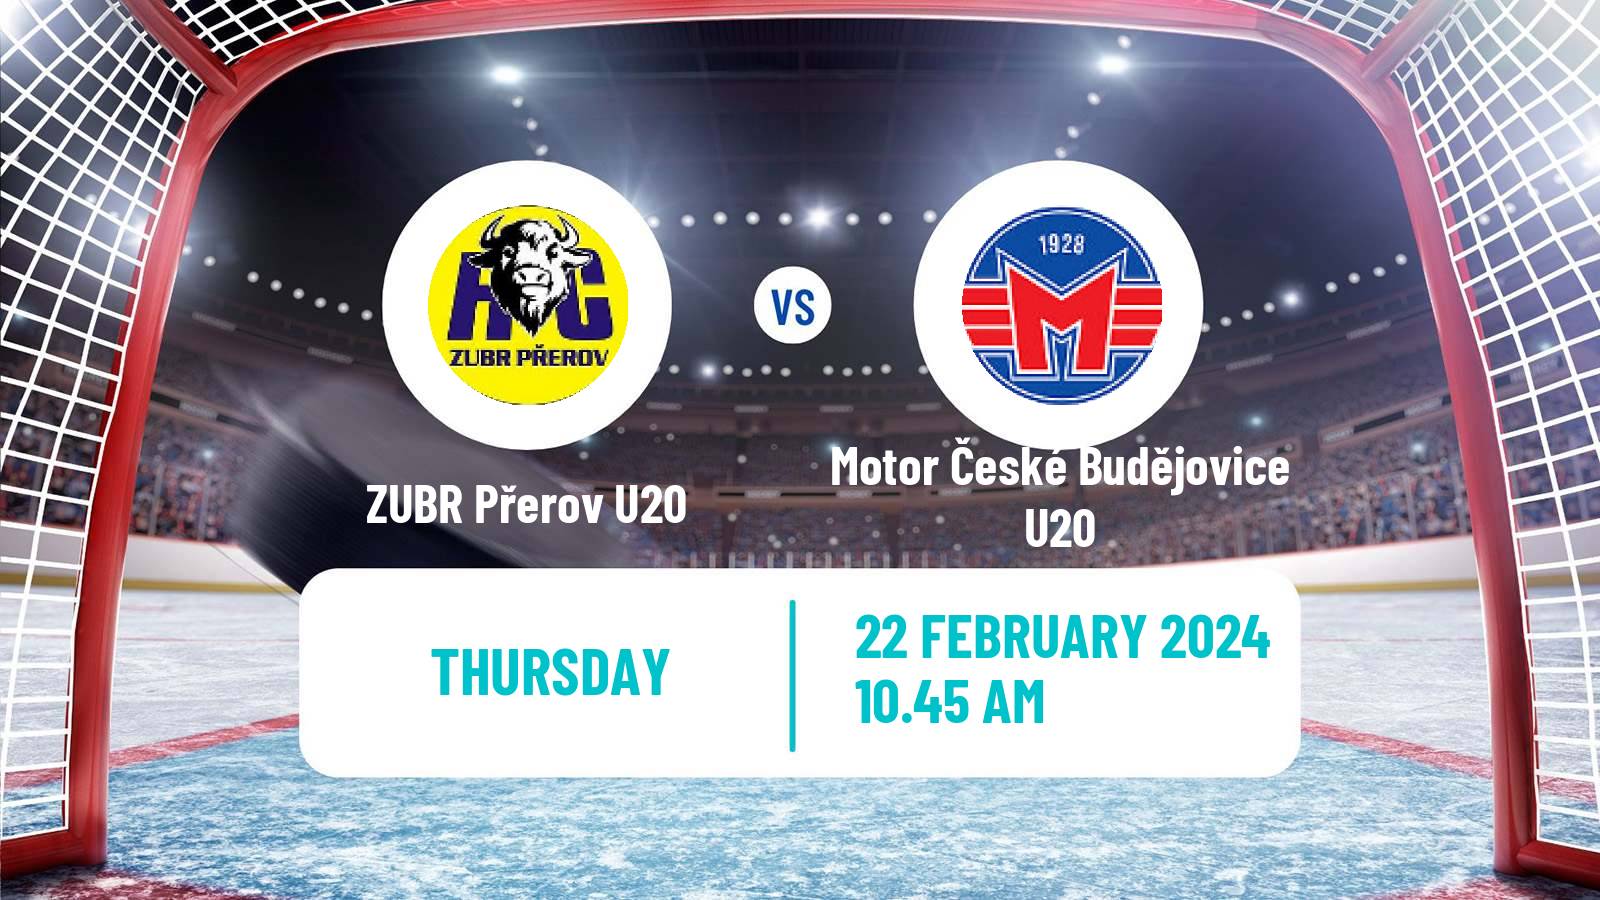 Hockey Czech ELJ ZUBR Přerov U20 - Motor České Budějovice U20